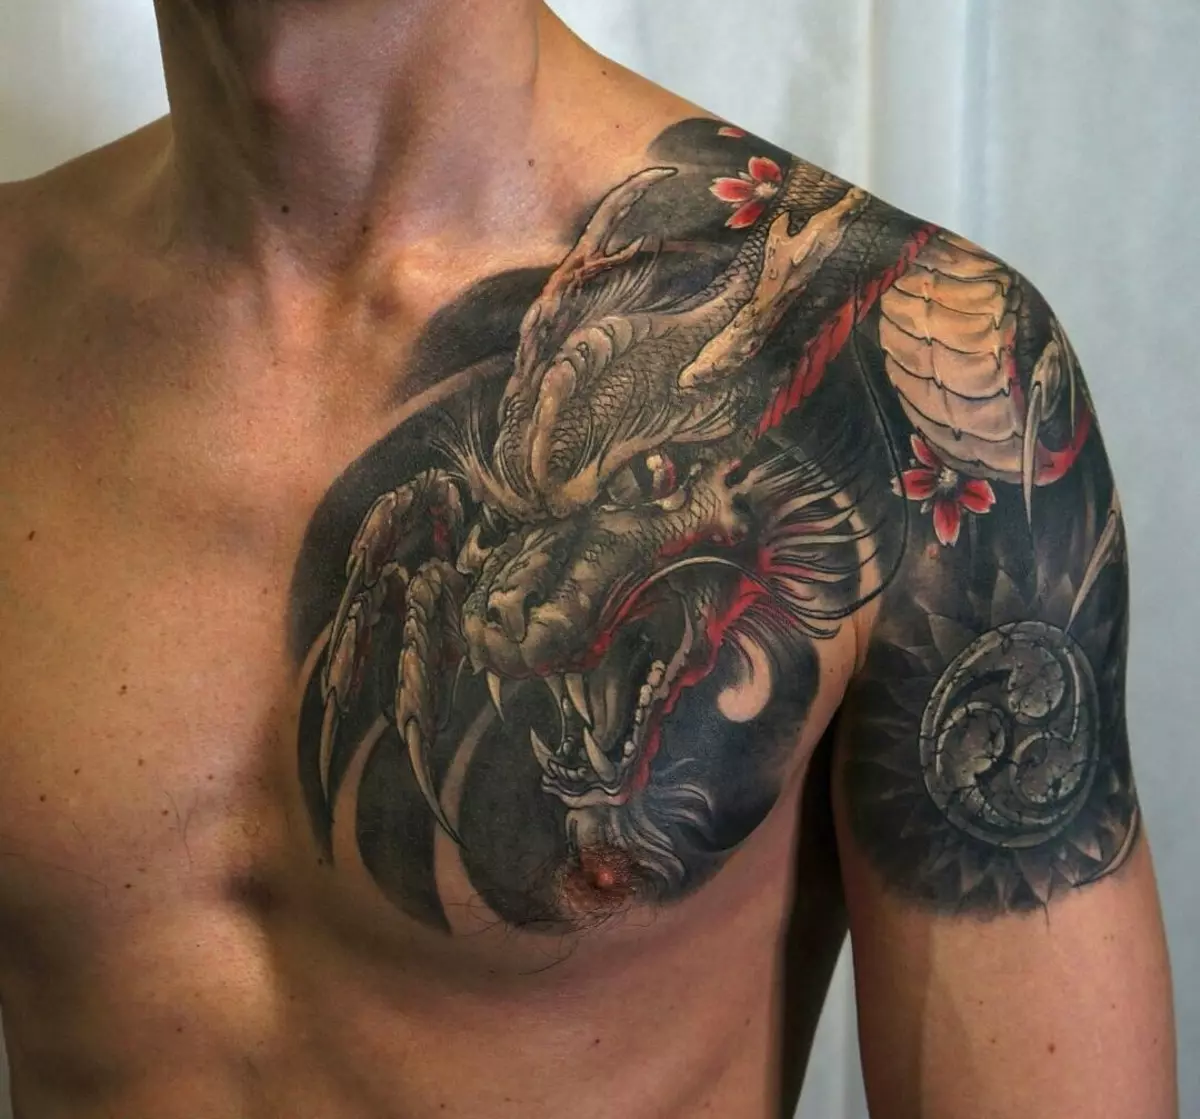 Япон аждаһа белән тату: эскизлар һәм Япония стилендәге татуировкаларның бәясе, җилкәдә һәм күкрәгендә, күктә һәм башка зоналарда җиңәләр 14174_24